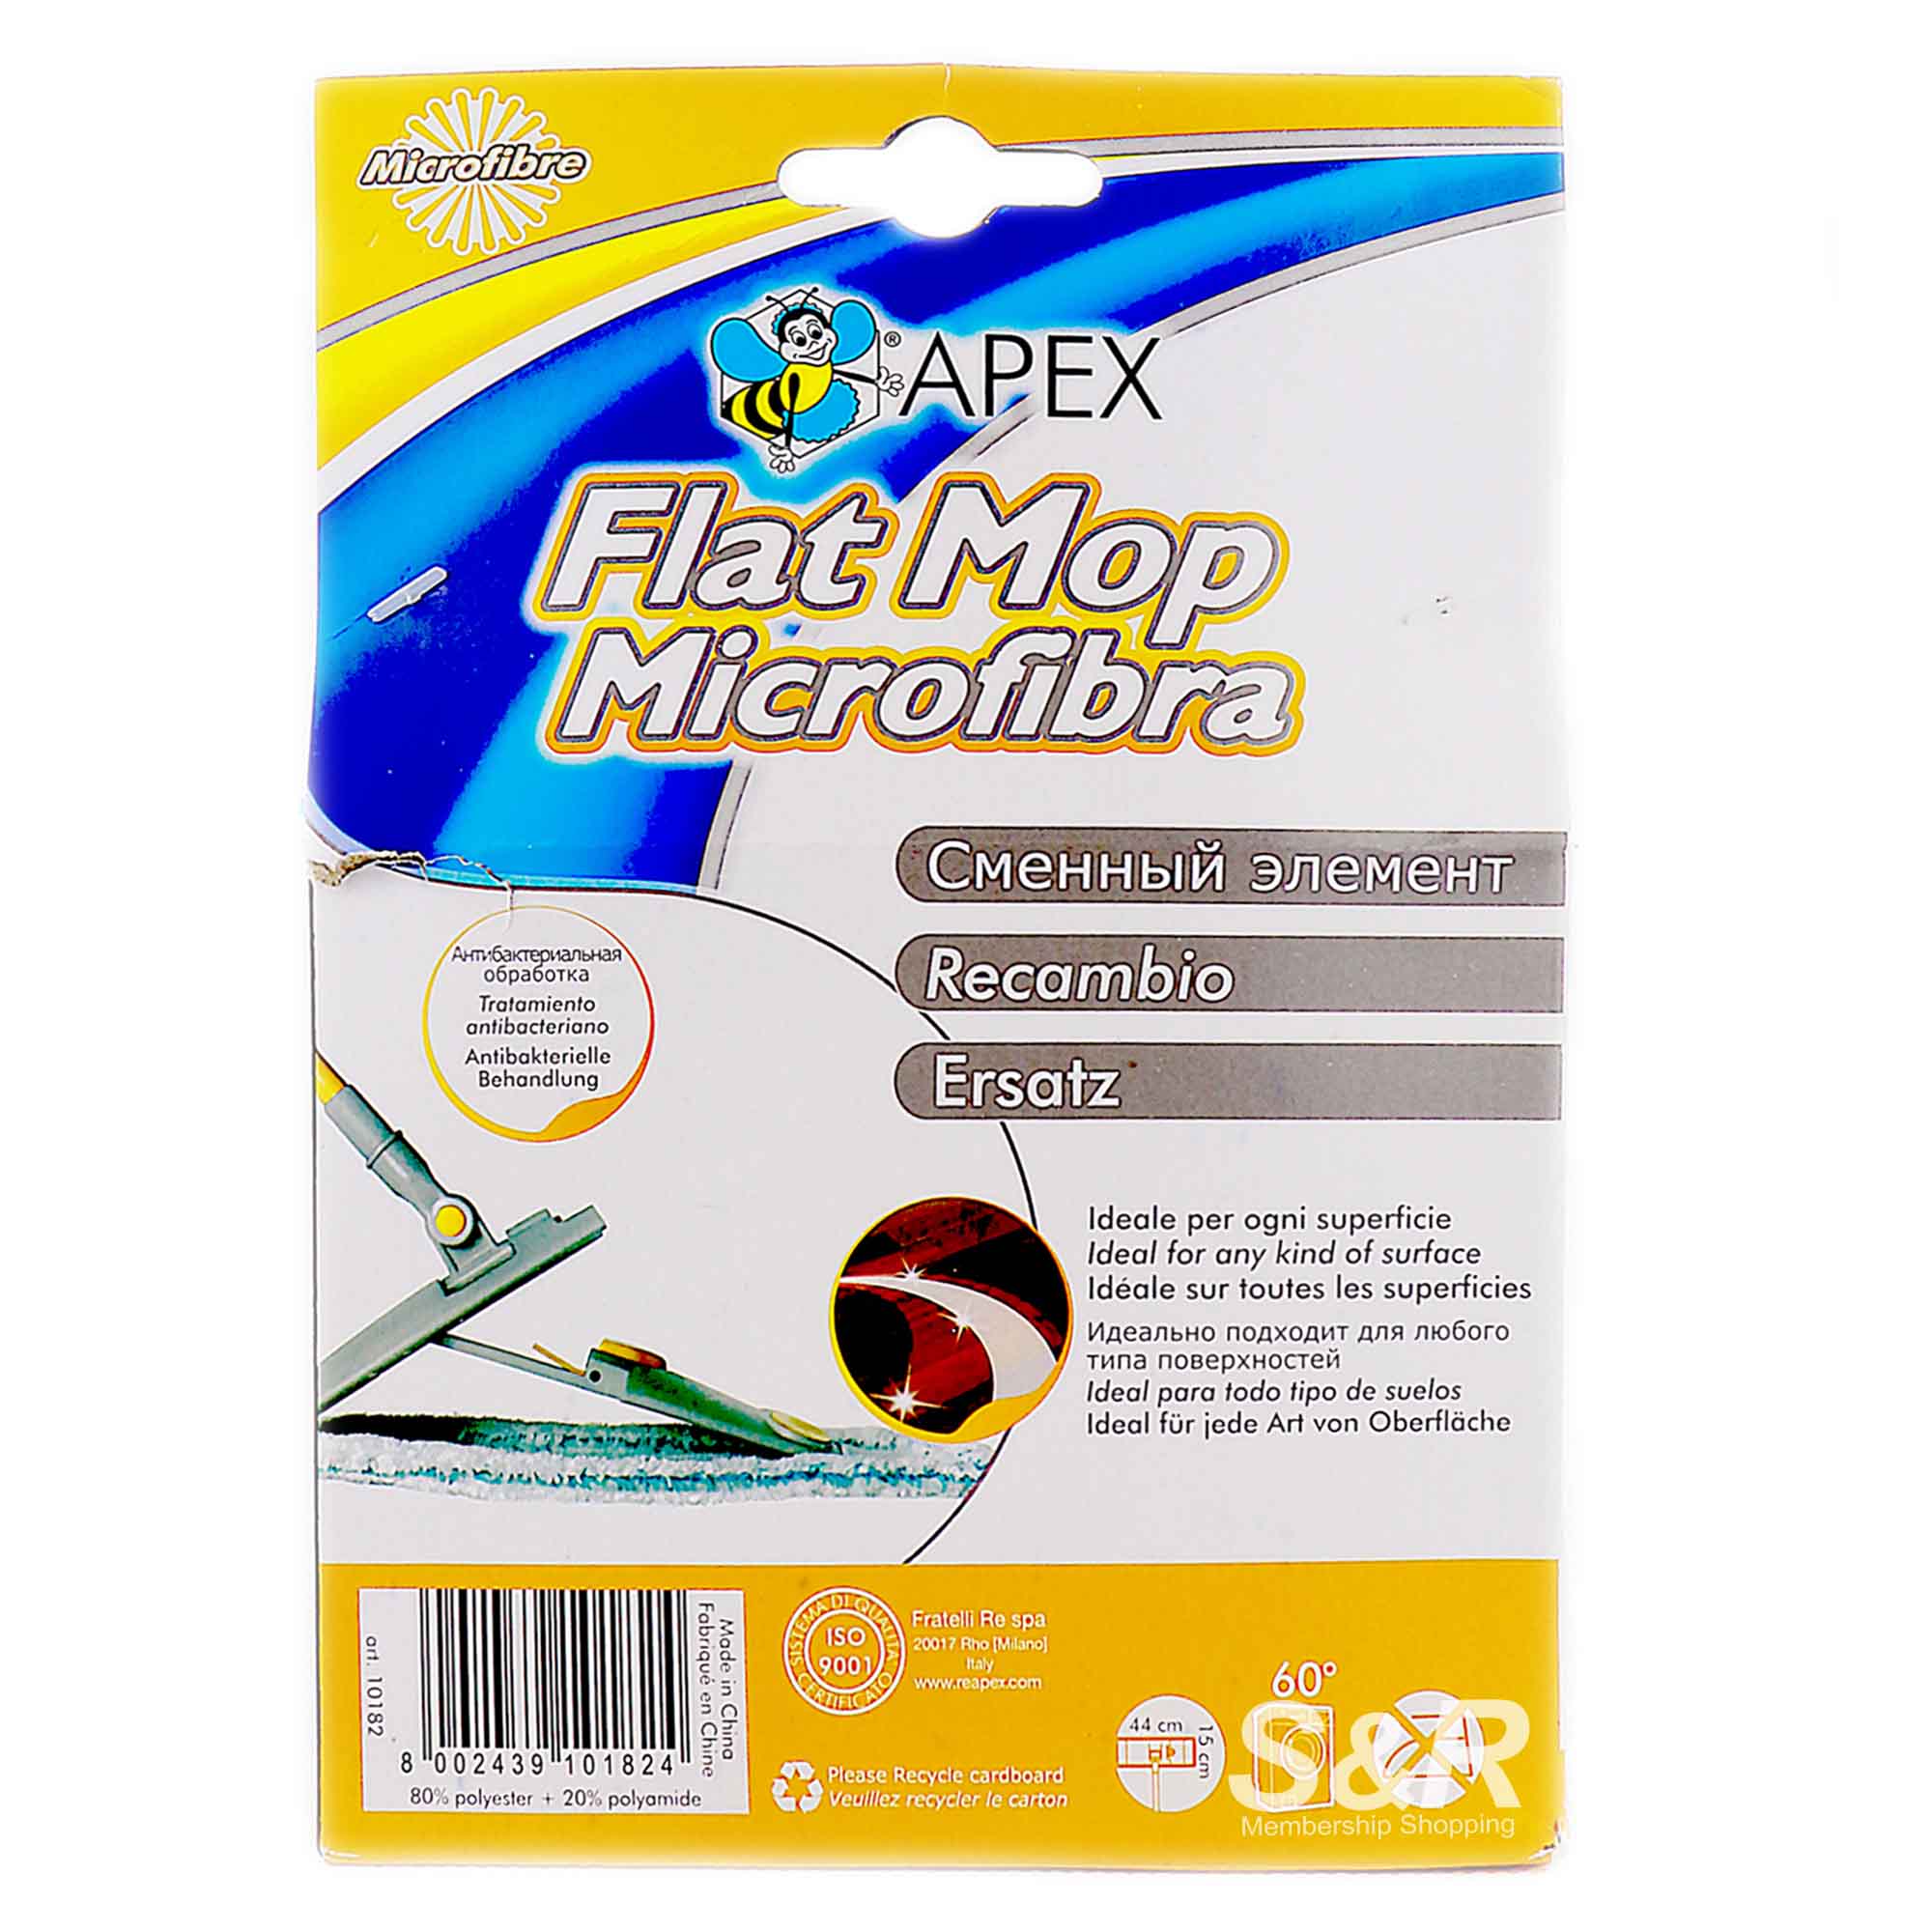 Flat Mop Antibacterial Refill